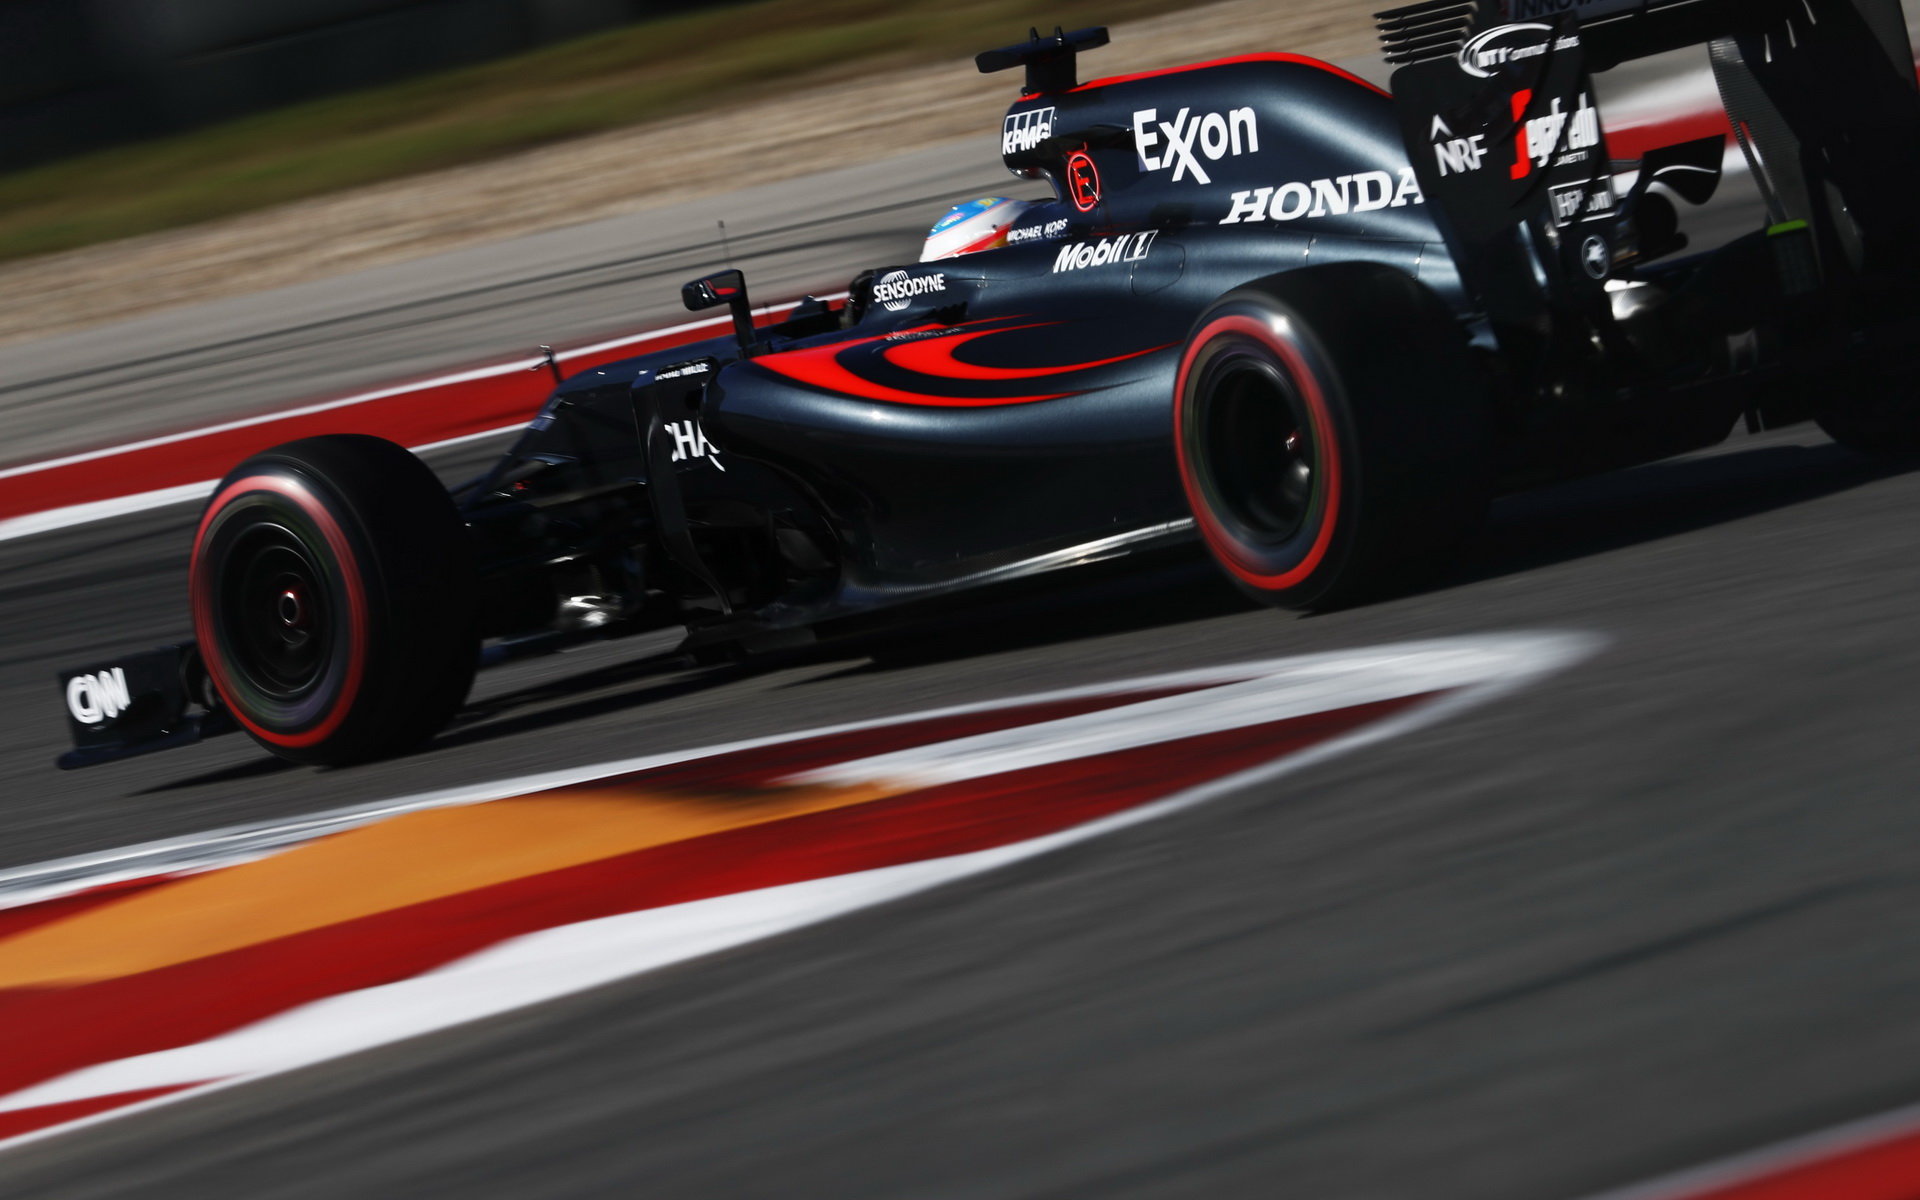 Nová pravidla přinášejí velkou výzvu, dokáže McLaren přijít se špičkovou aerodynamikou?